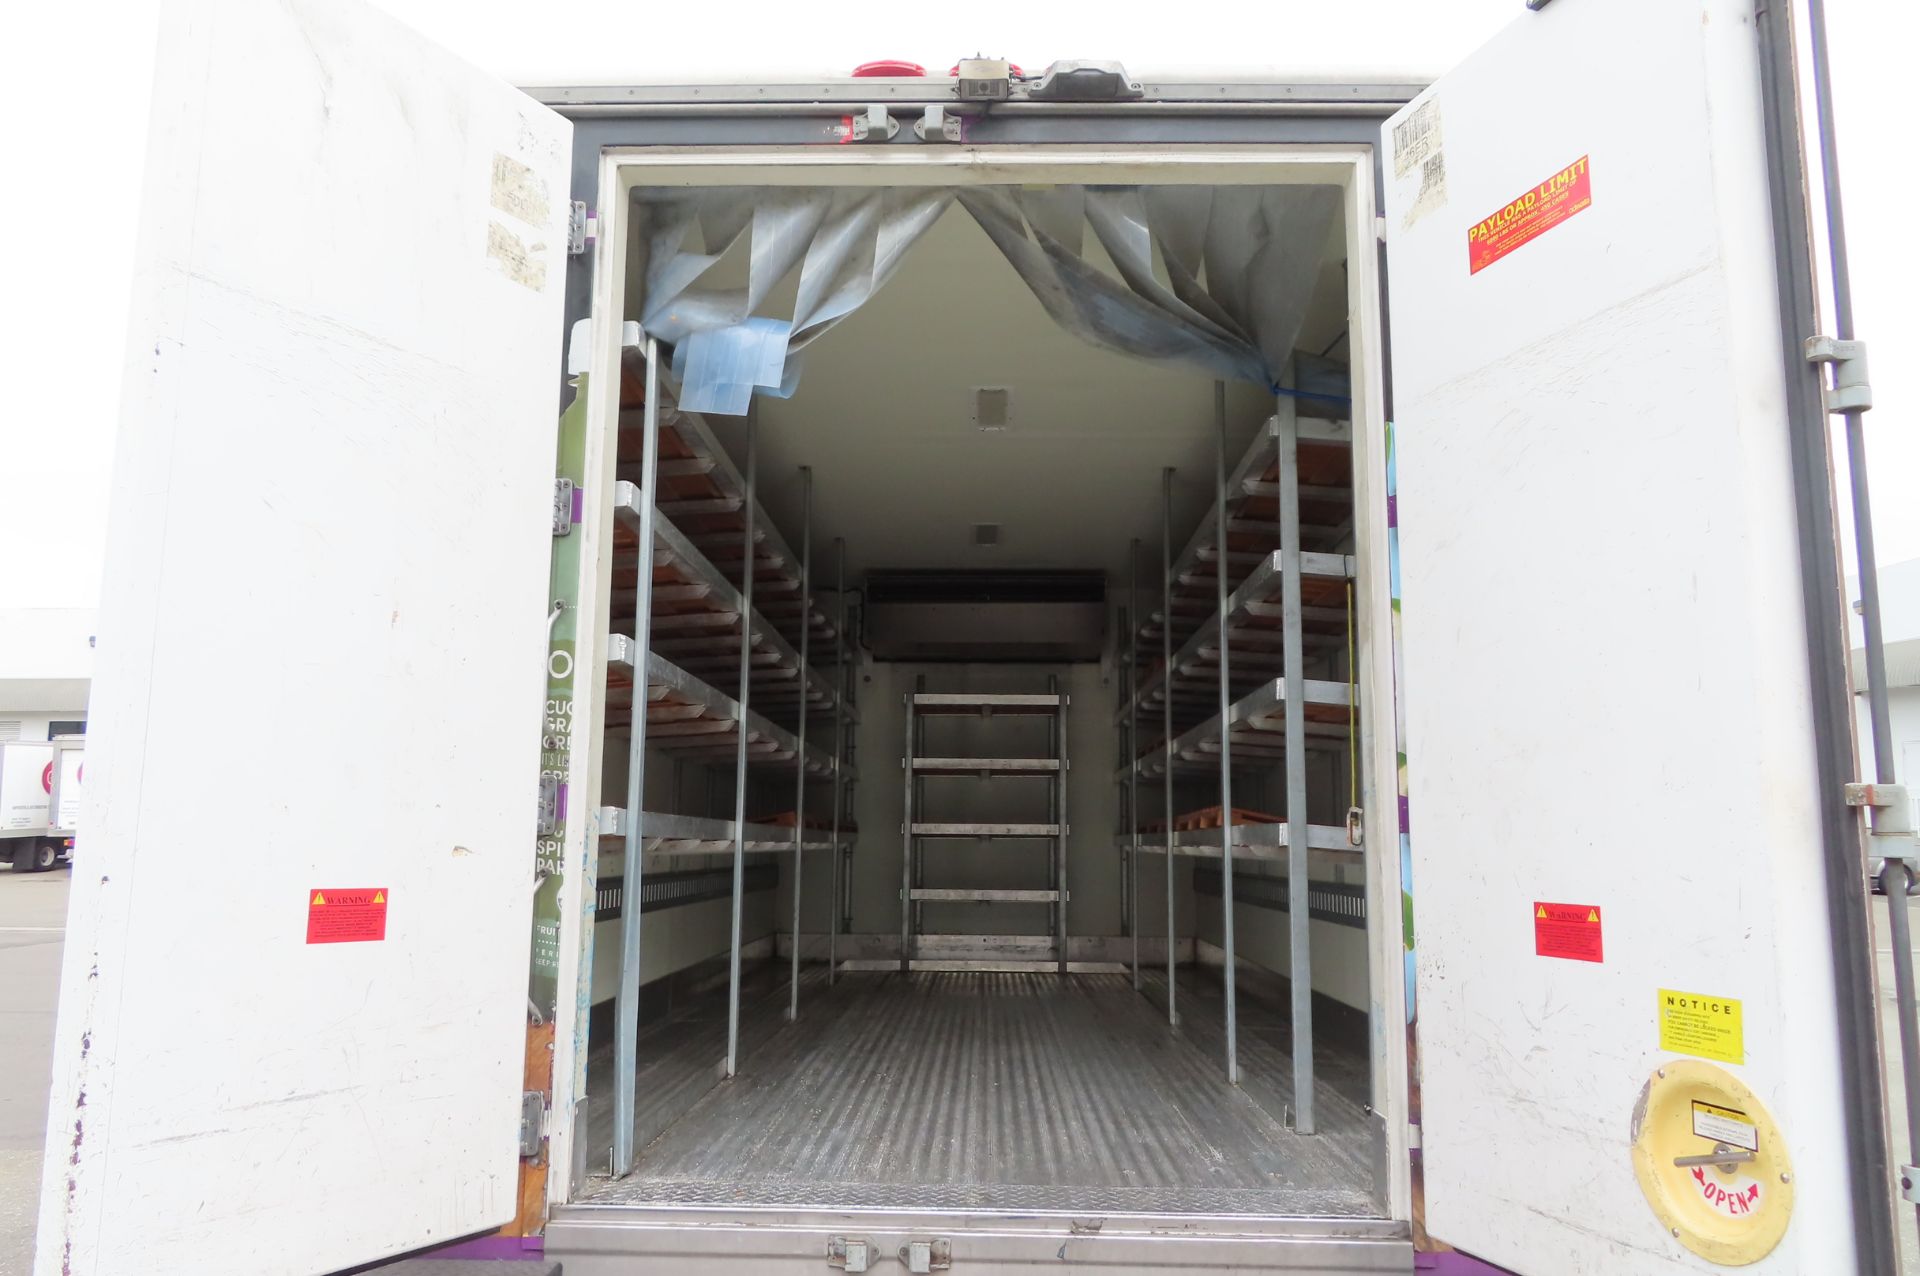 2013 Isuzu refrigerated truck - Image 5 of 9